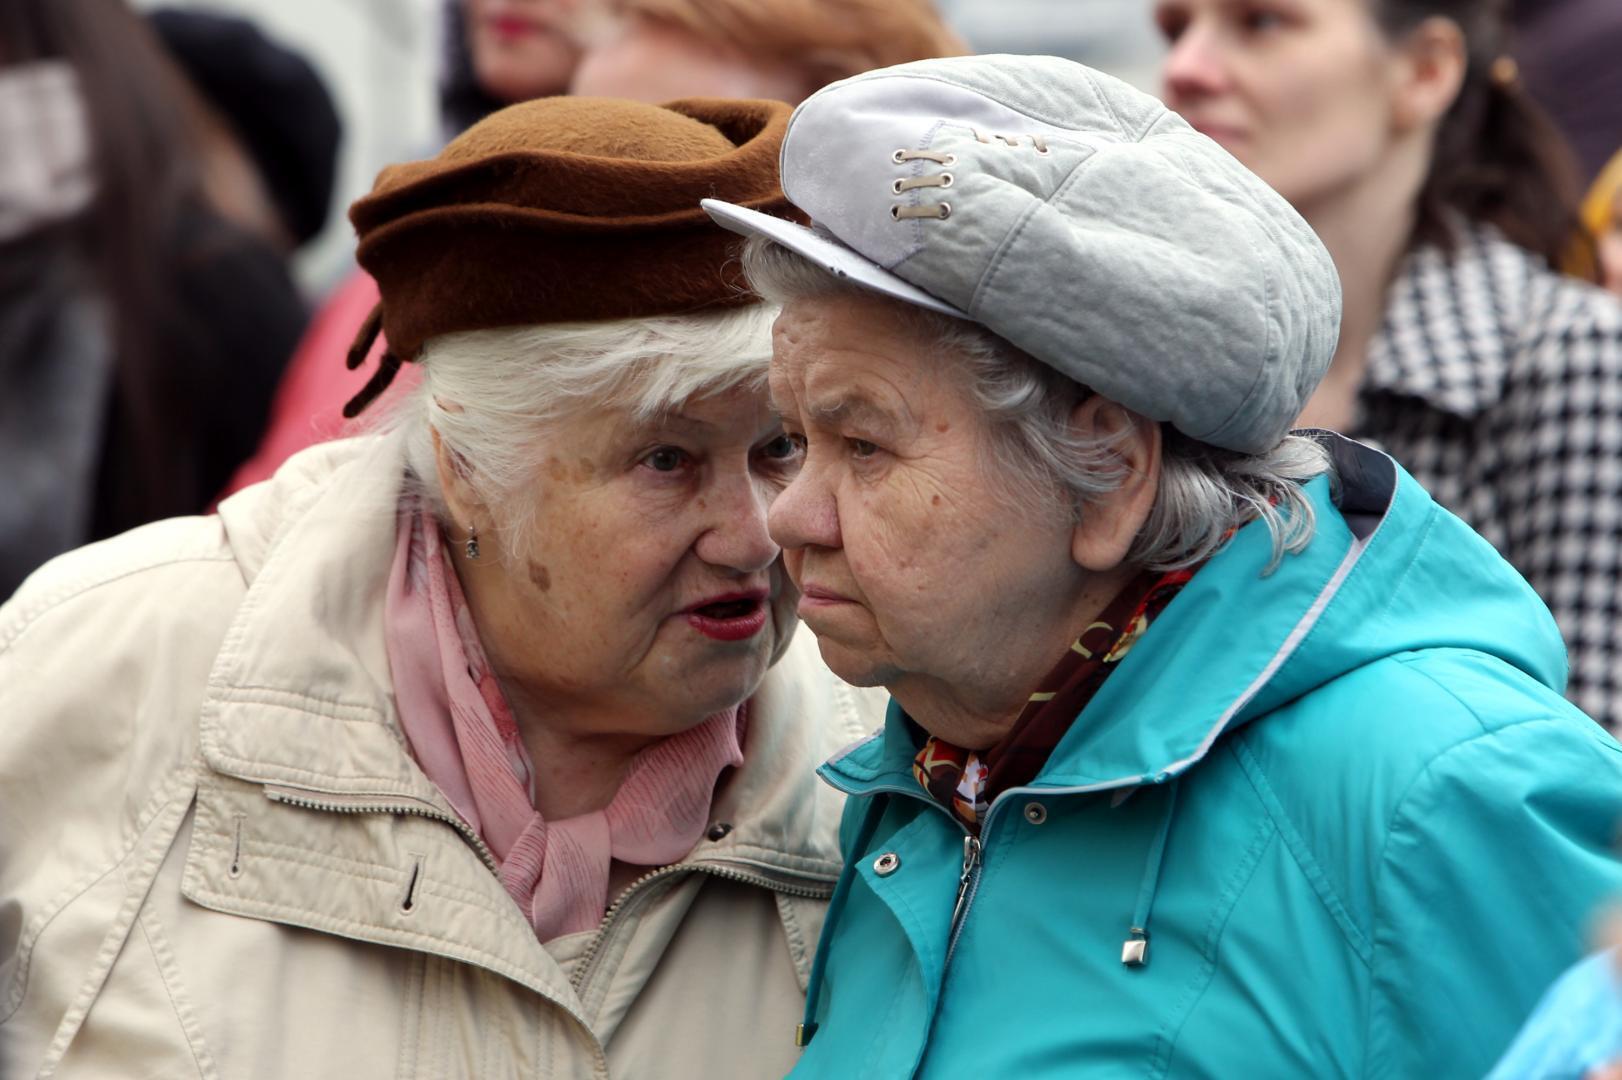 Про пенсионный возраст последние новости в россии